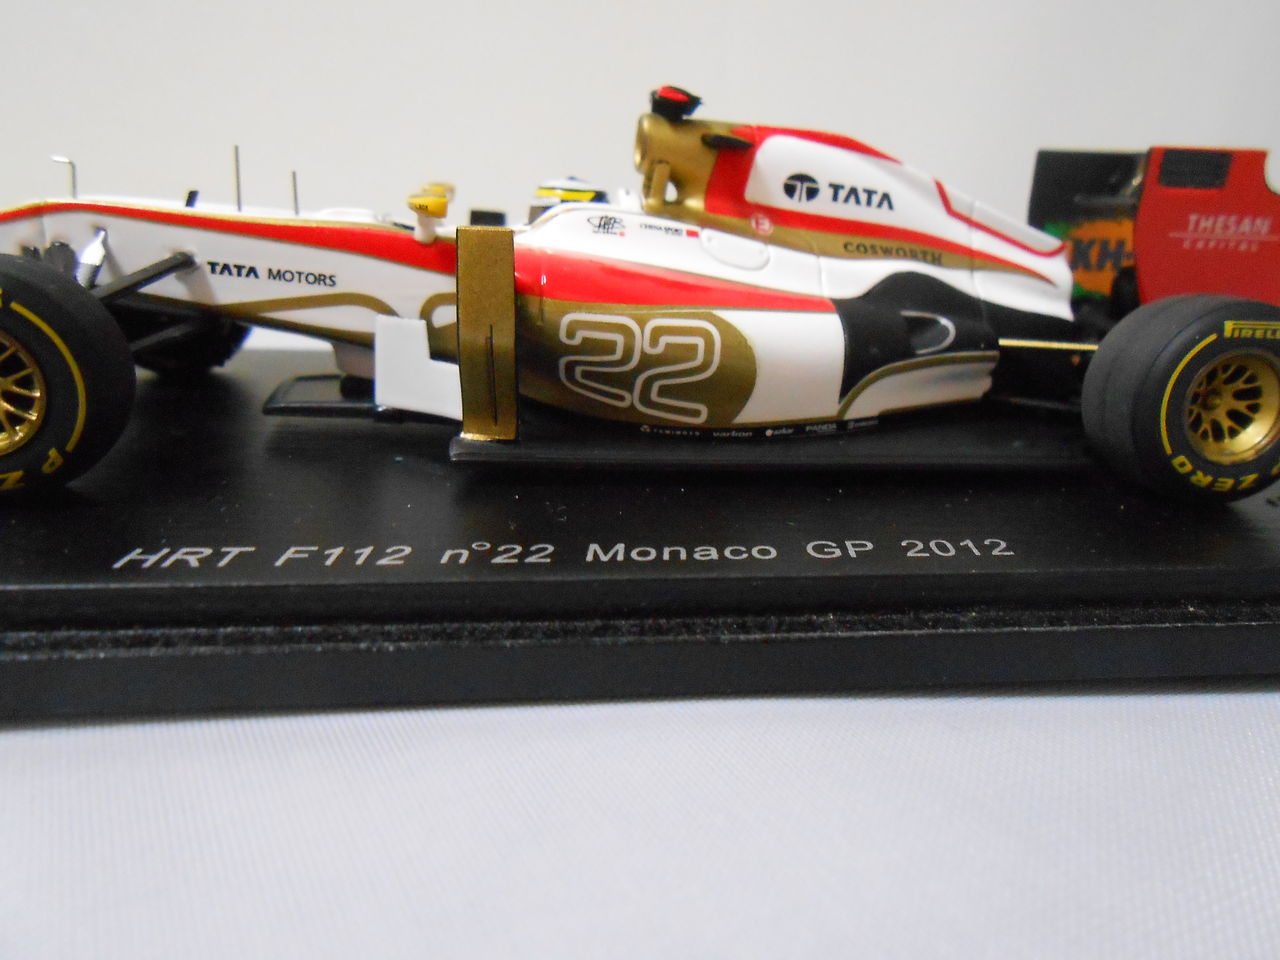 2012 1/43 HRT F112 モナコGP ペドロ・デ・ラ・ロサ : 大人のF1コレクション